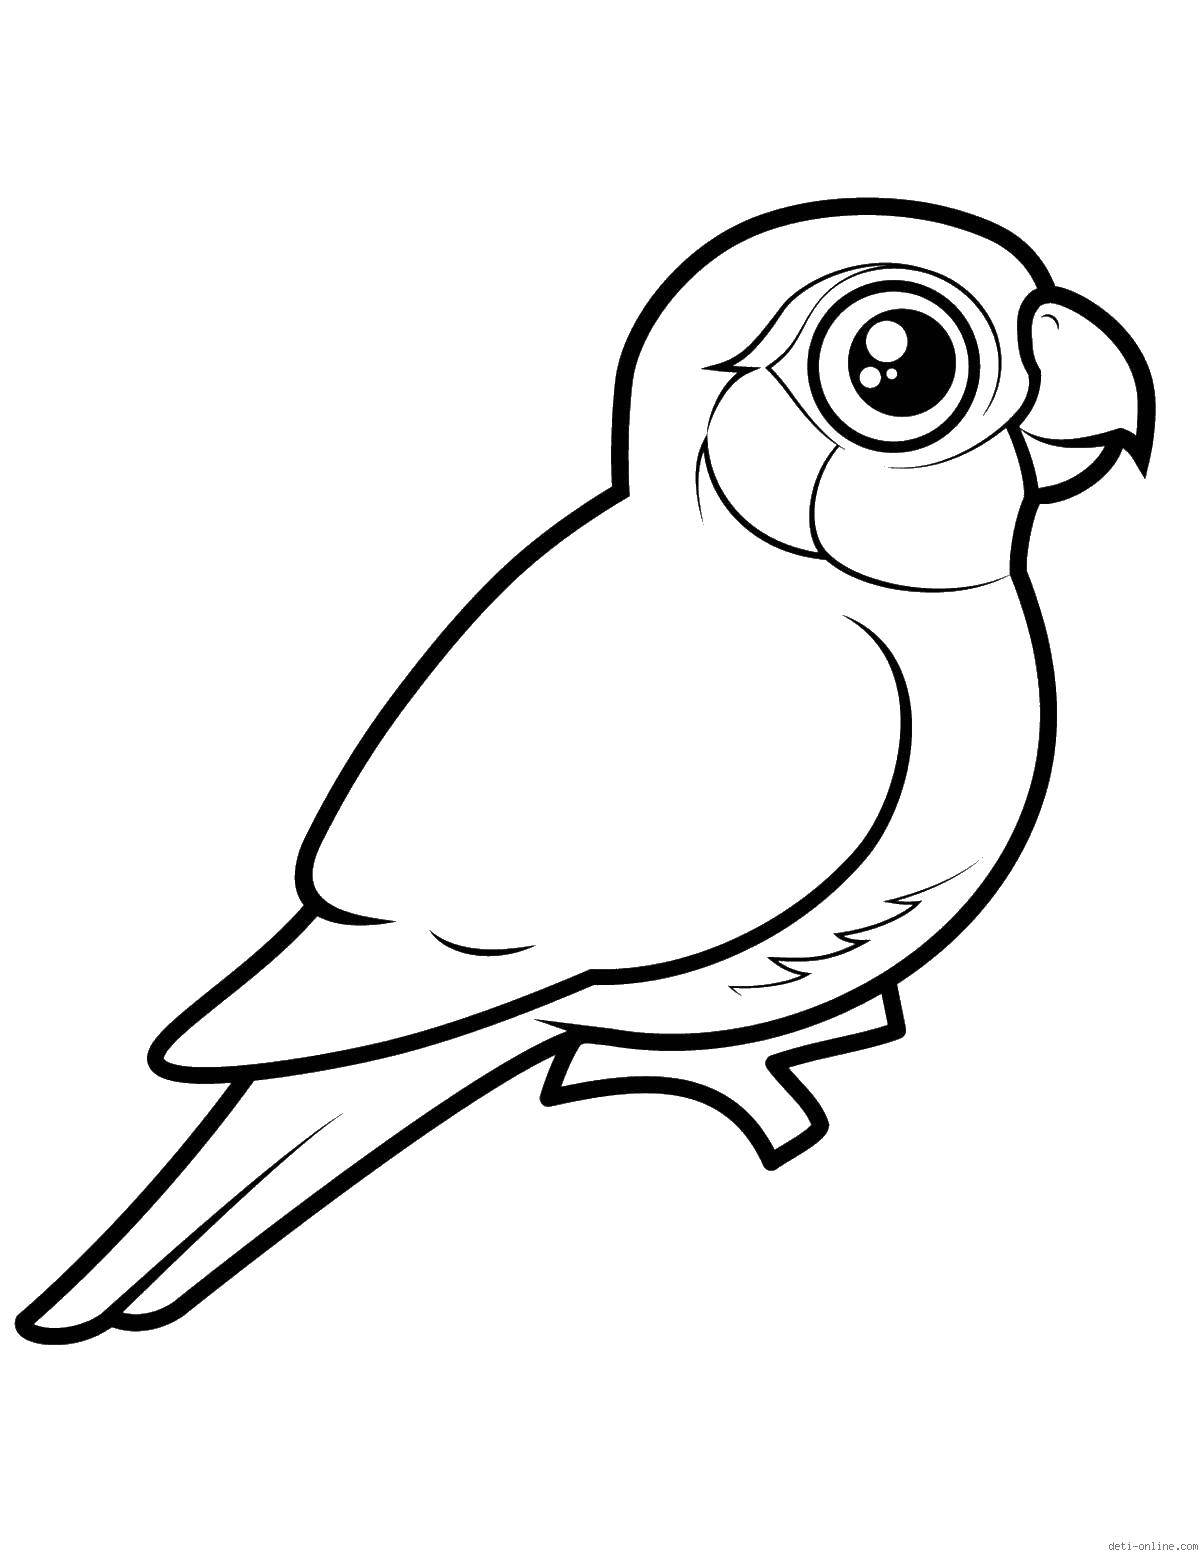 Опис: розмальовки  Папуга на гілочці. Категорія: птахи. Теги:  папуга, гілка, птиця, очі.